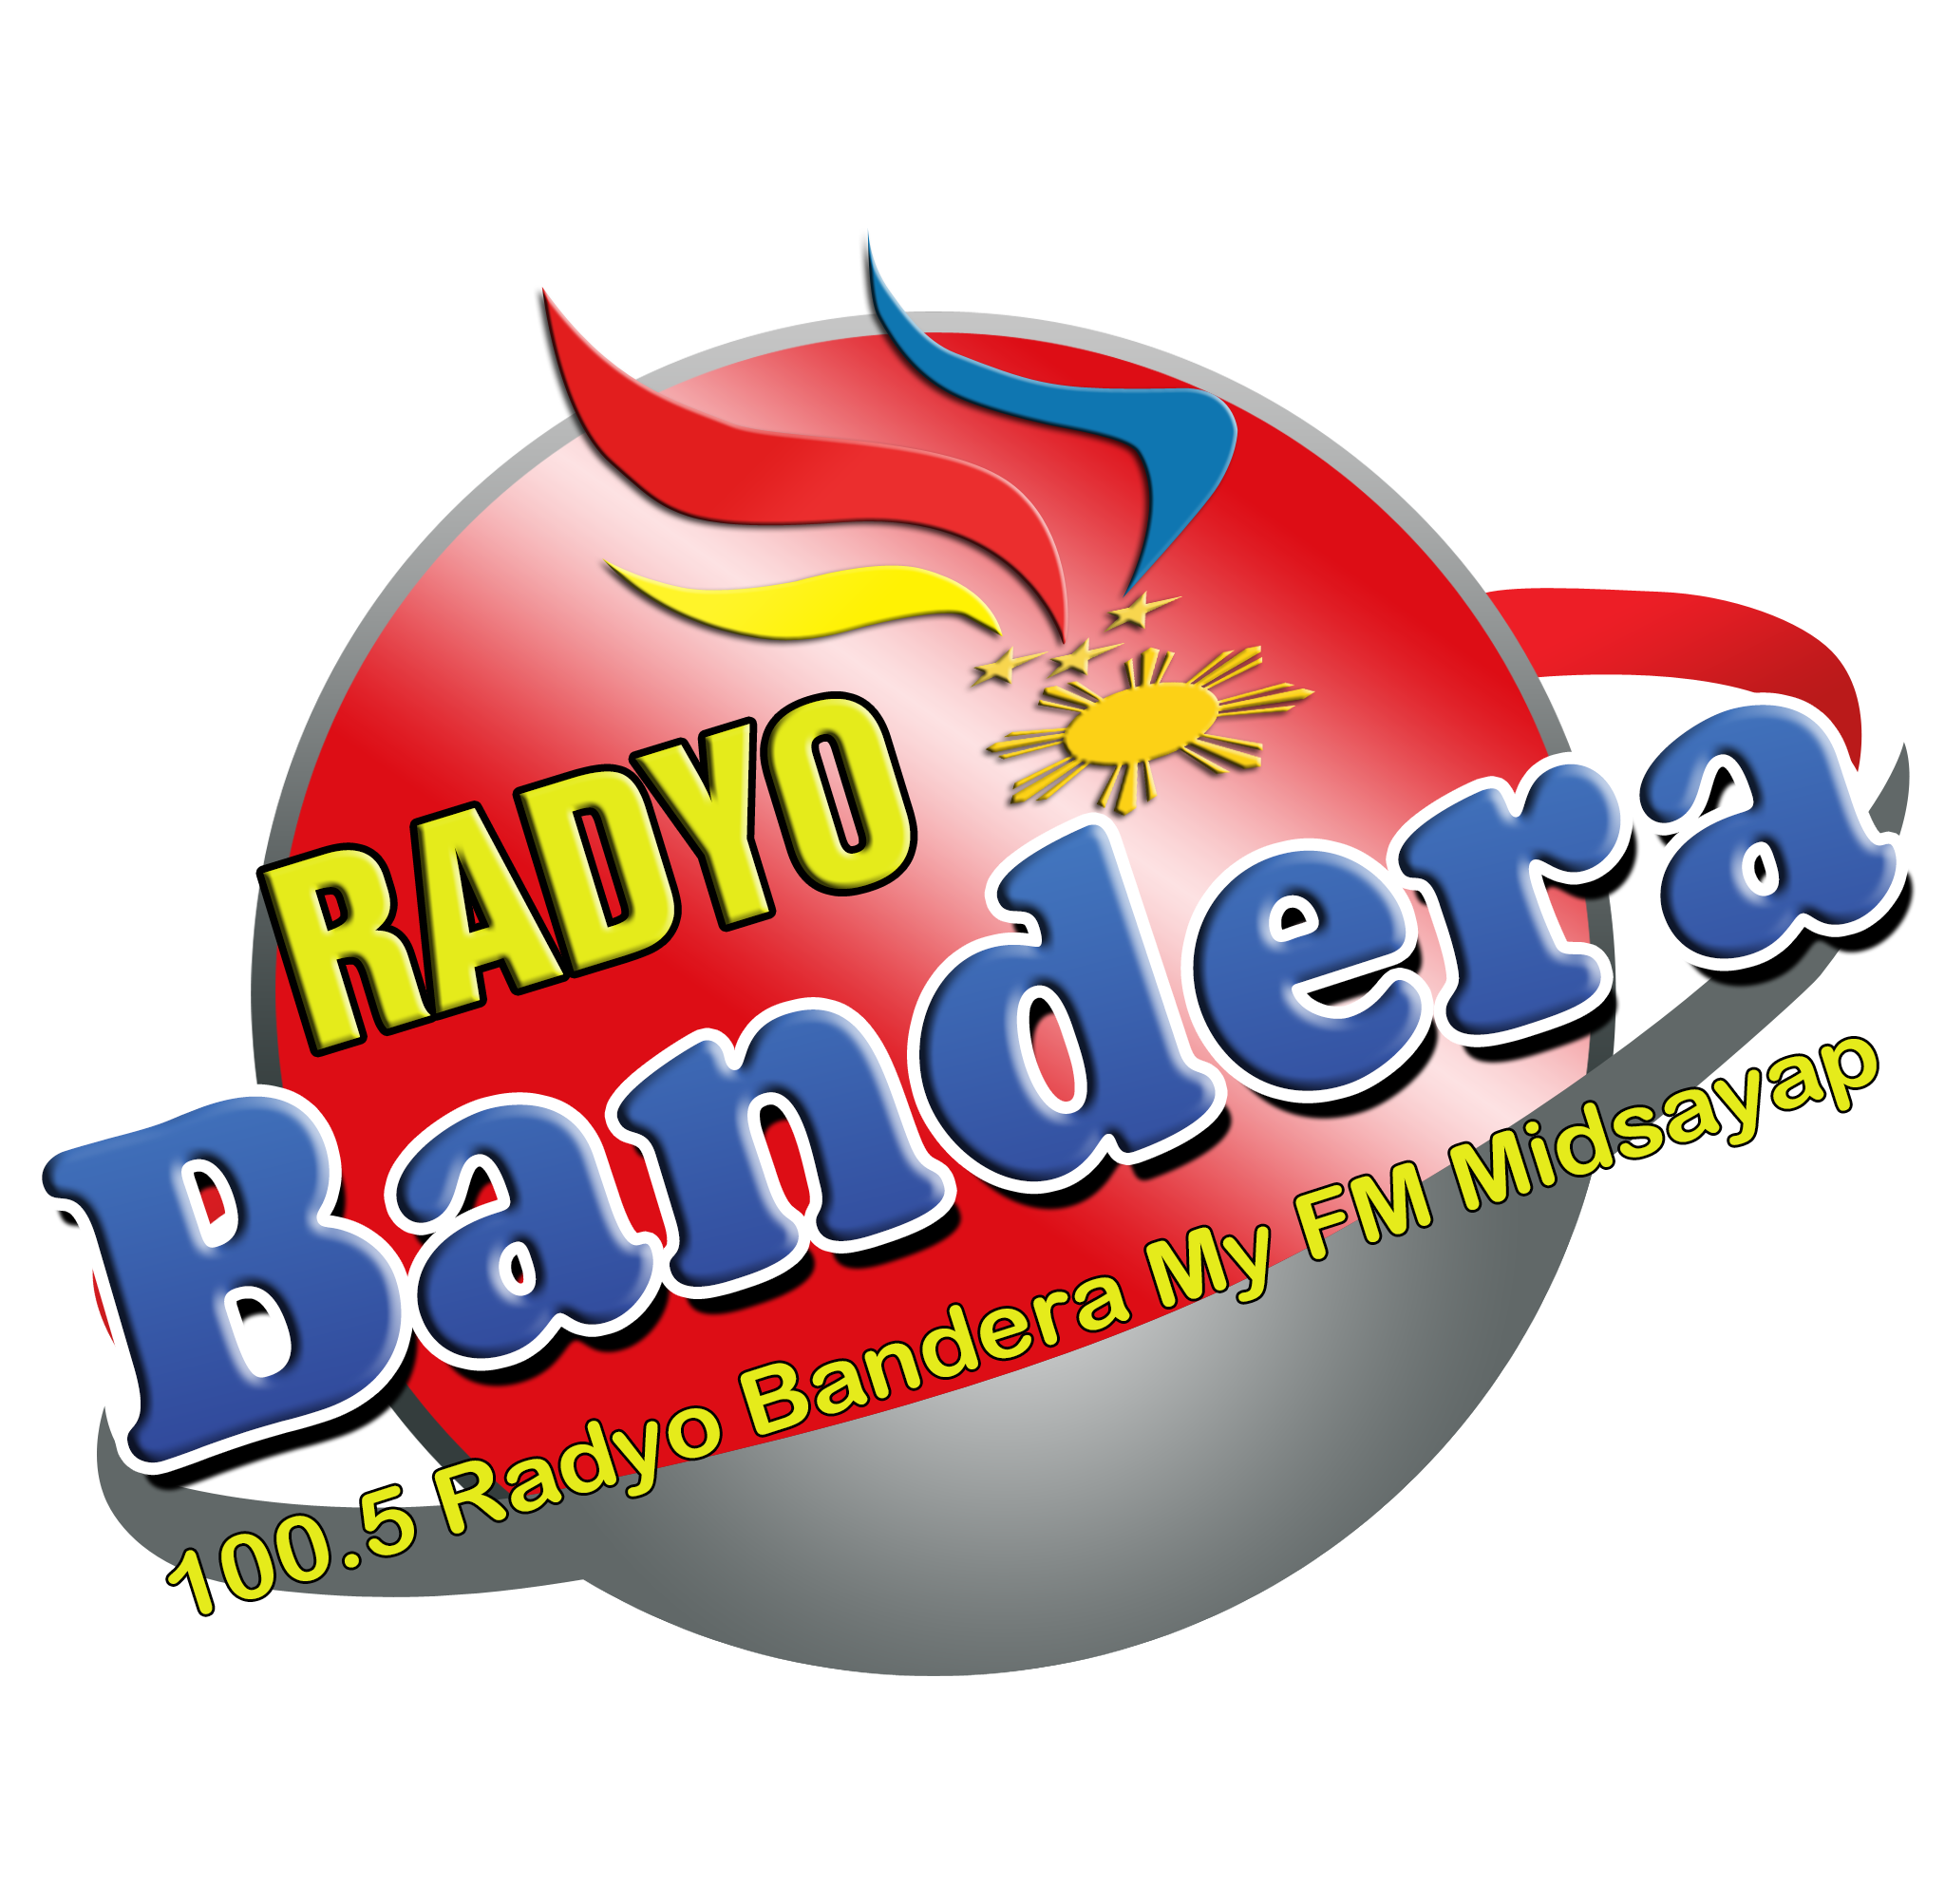 Radyo Bandera My FM Midsayap